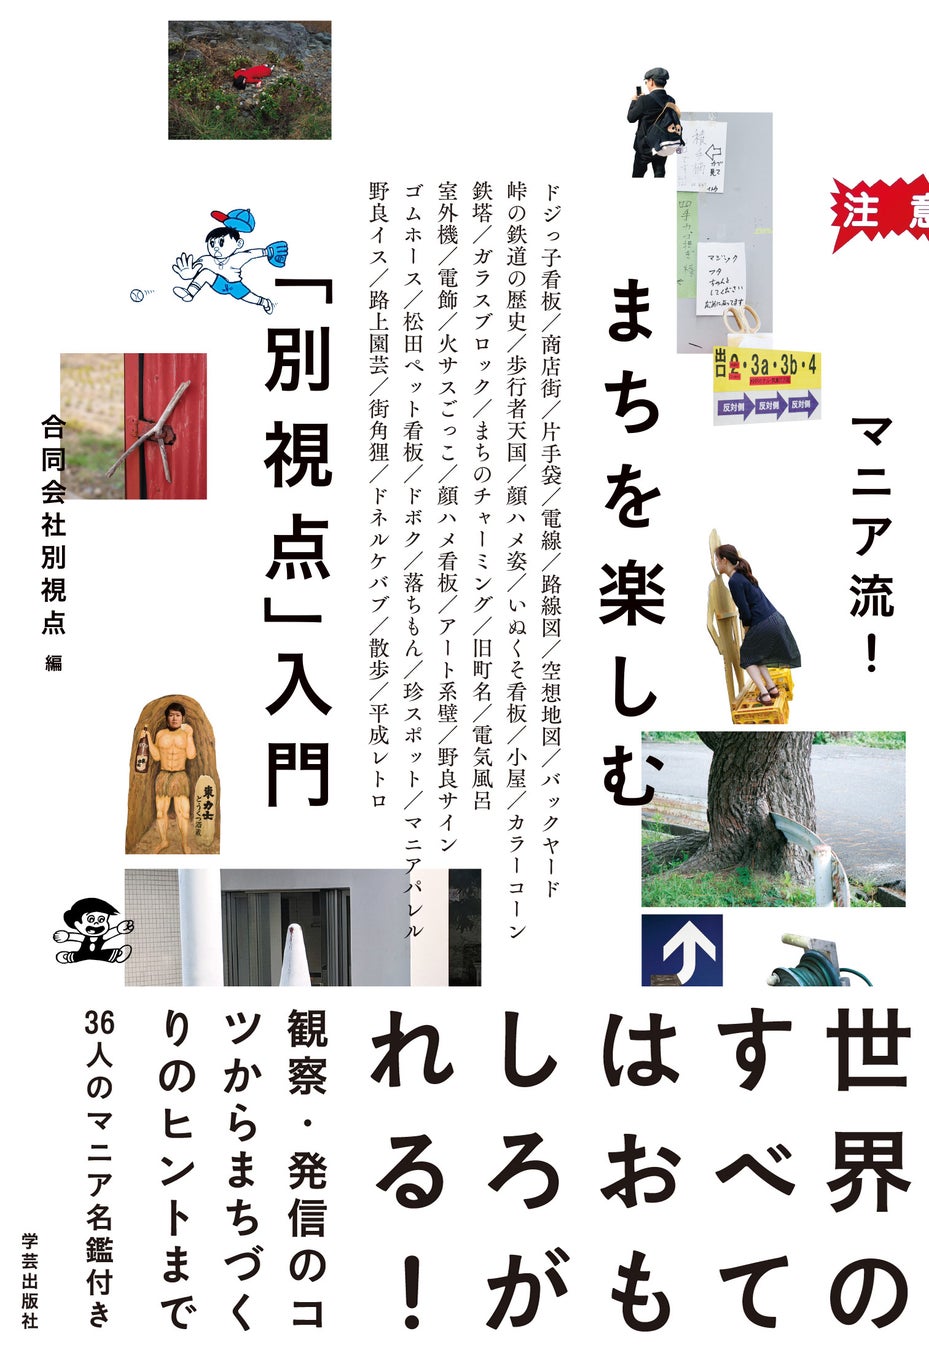 マニア36人による観察・発信のヒント満載『マニア流！まちを楽しむ「別視点」入門』刊行。東京・大阪で出版記念イベントも